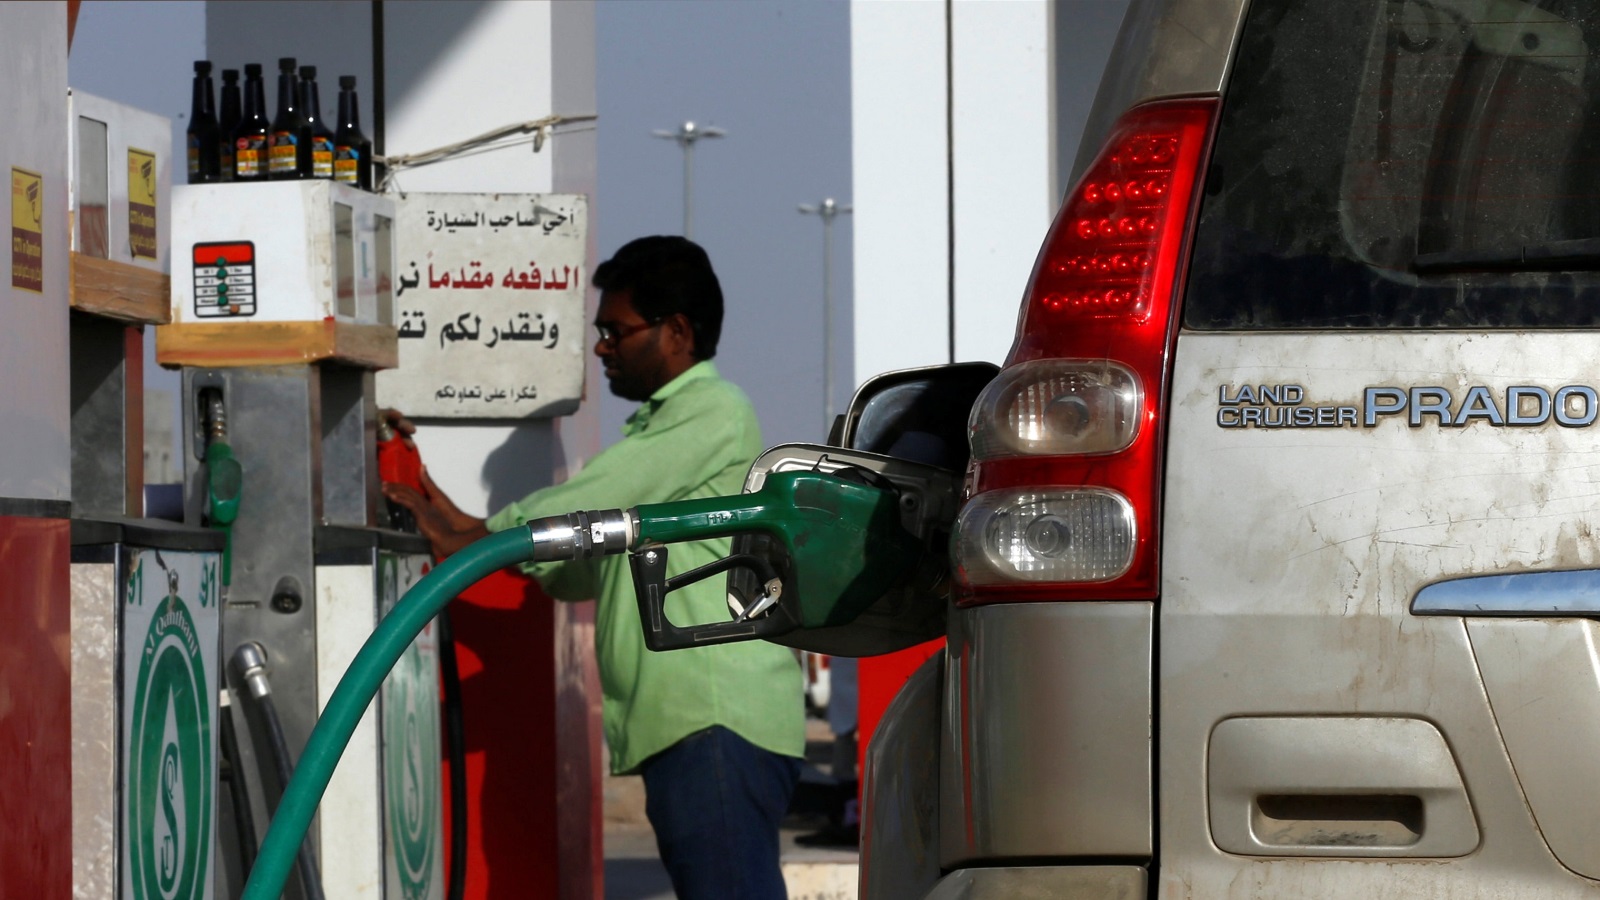 ‪وزارة الطاقة السعودية قالت إنها ستعلن في الربع الأول من العام المقبل عن زيادات في أسعار البنزين‬ وزارة الطاقة السعودية قالت إنها ستعلن في الربع الأول من العام المقبل عن زيادات في أسعار البنزين (رويترز-أرشيف)